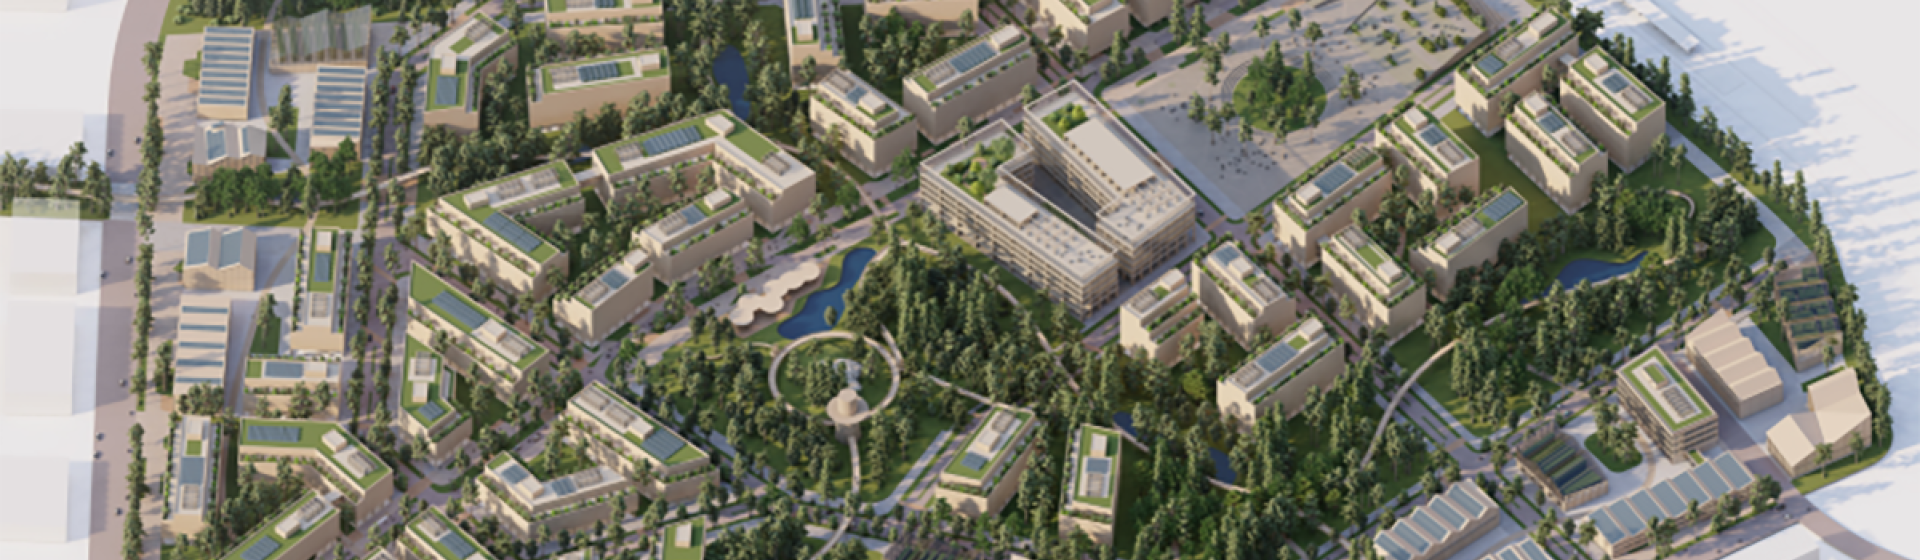 Visionsbild över Skavstaområdet från arkitekttävlingen Europan 17 - tävlingsbidraget kallas Forest City